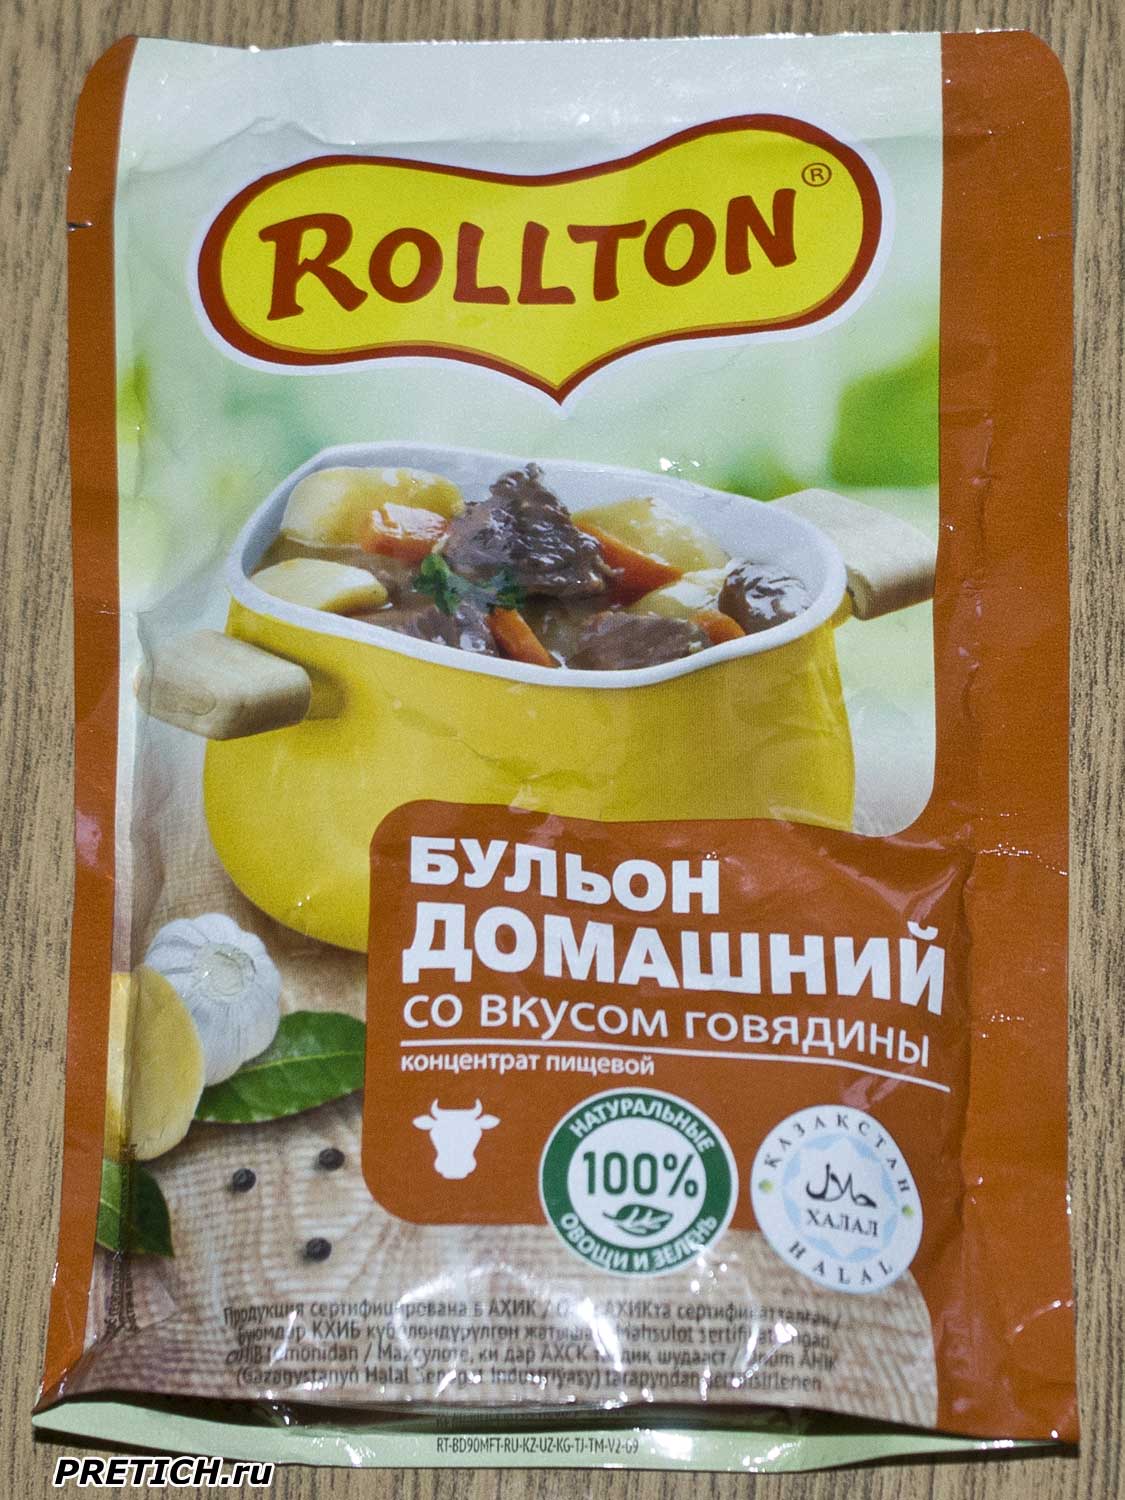 Отзыв на Rollton домашний бульон со вкусом говядины, из Казахстана